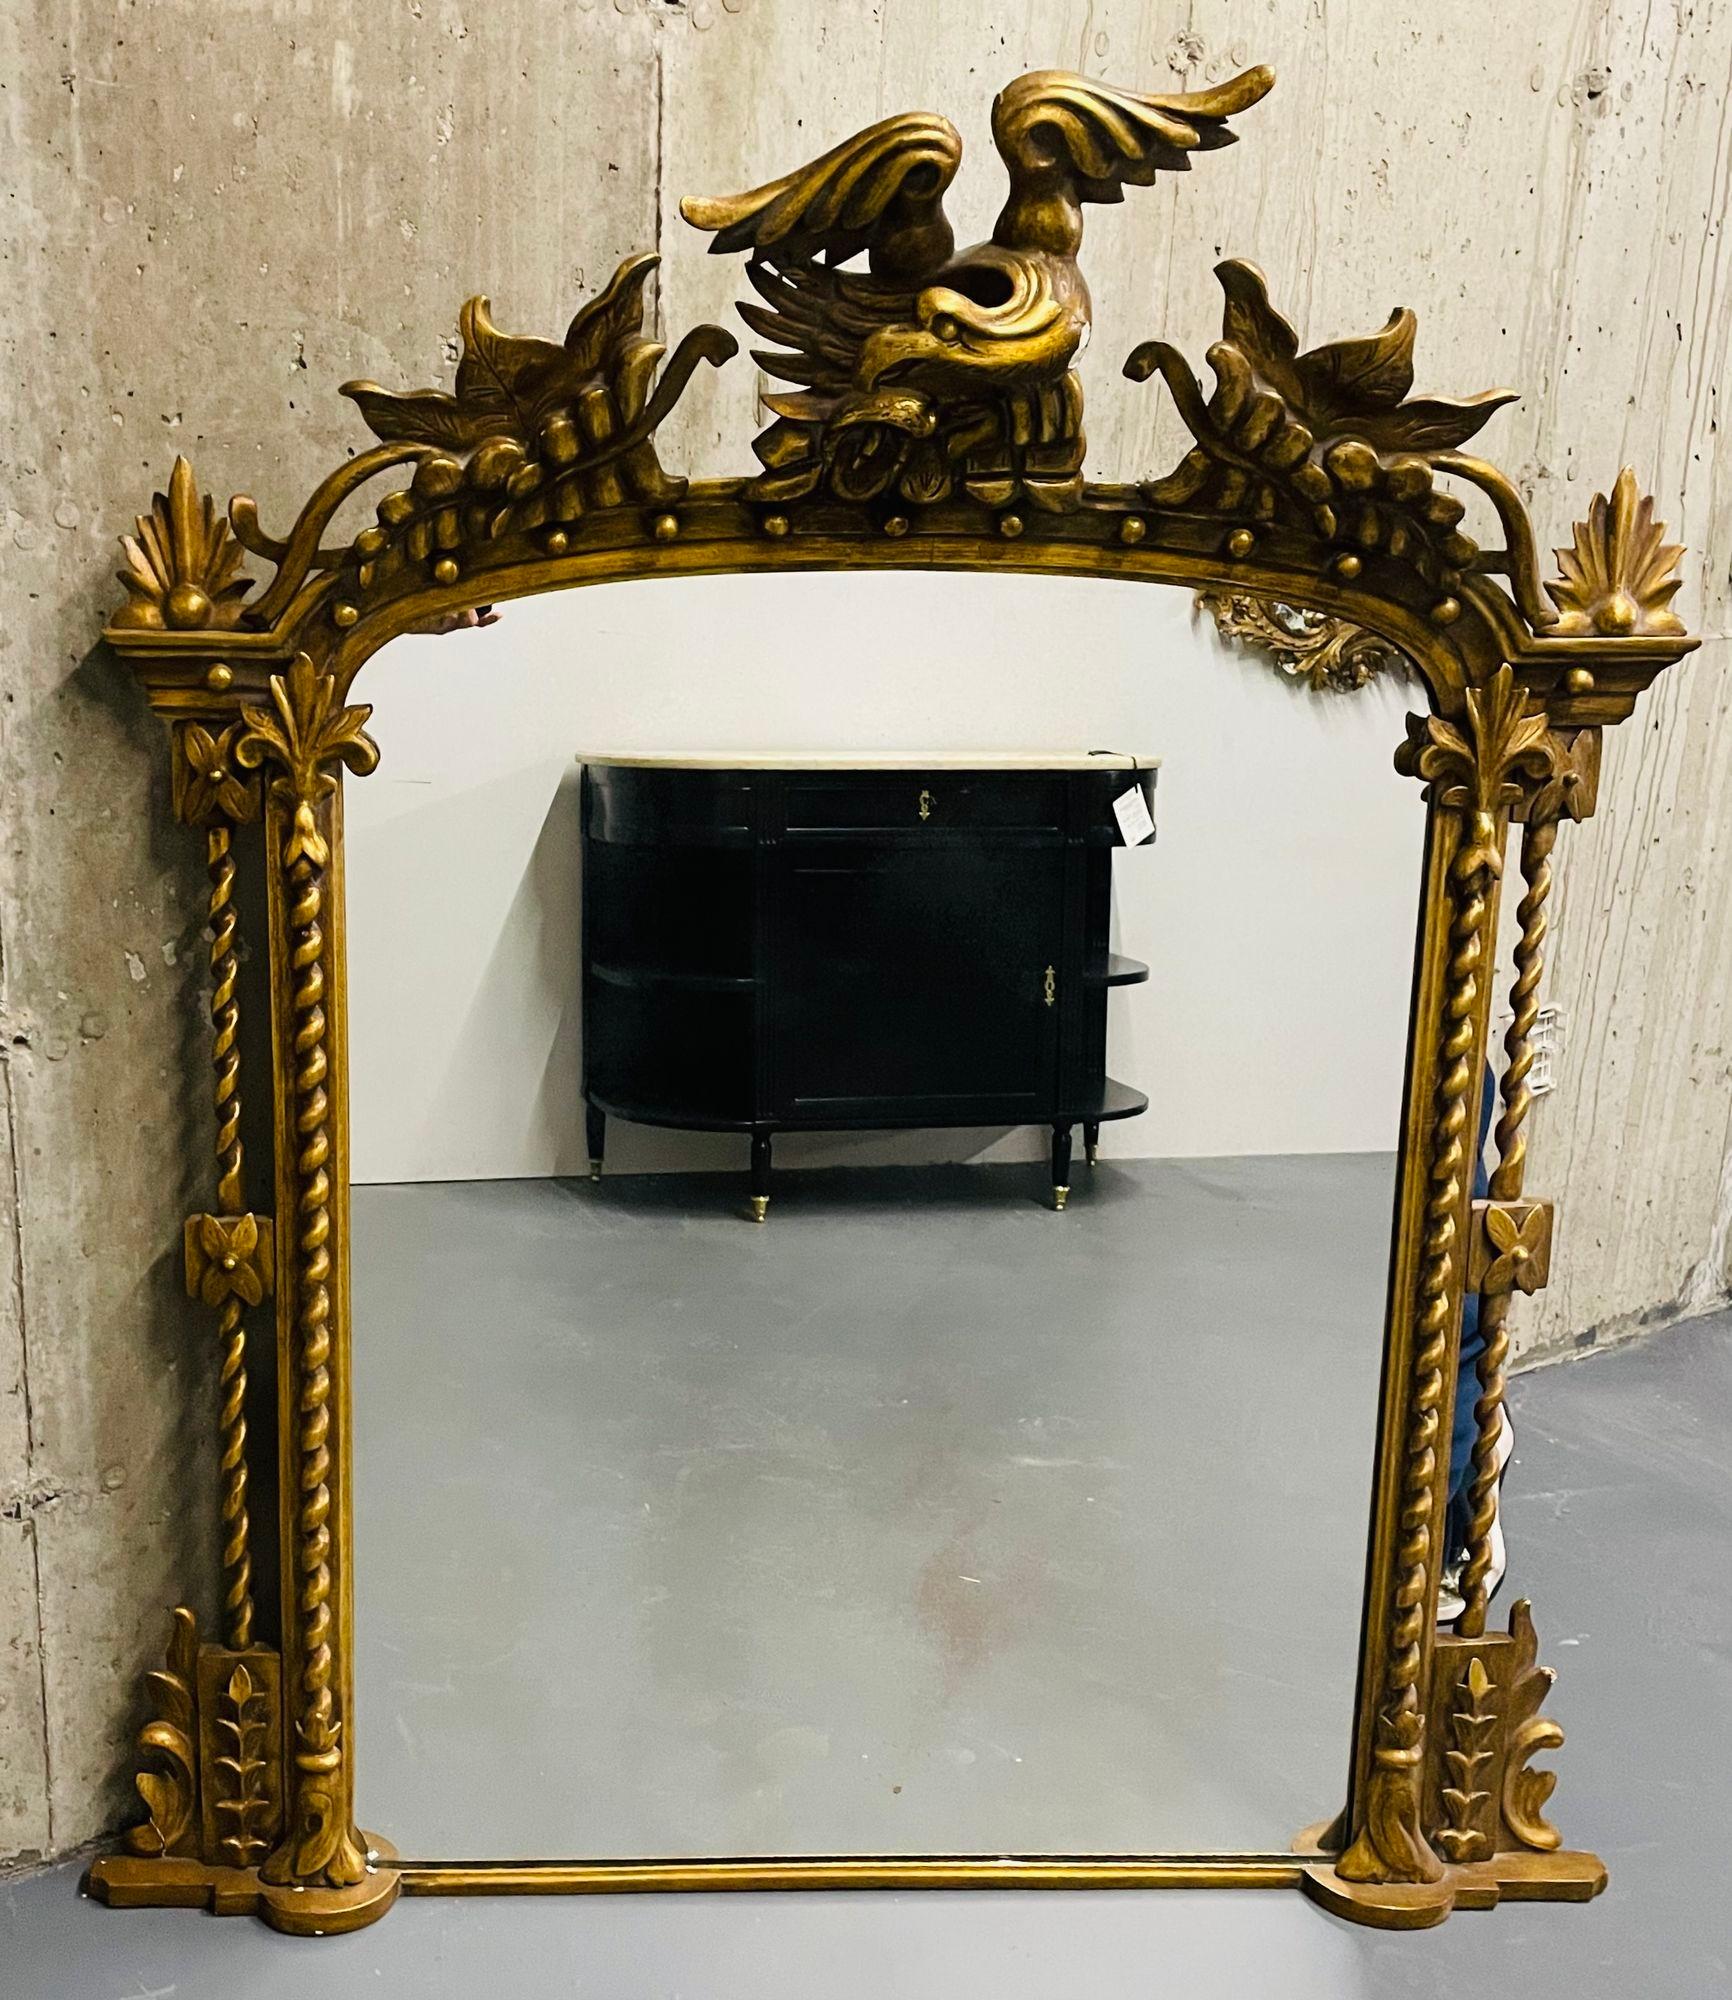 Antique miroir mural / console / miroir de quai en bois doré sculpté de style fédéral, années 1900

Un miroir polyvalent finement sculpté qui peut être utilisé sur le sol ou au-dessus d'un manteau de cheminée, d'une console ou accroché au mur. Ce